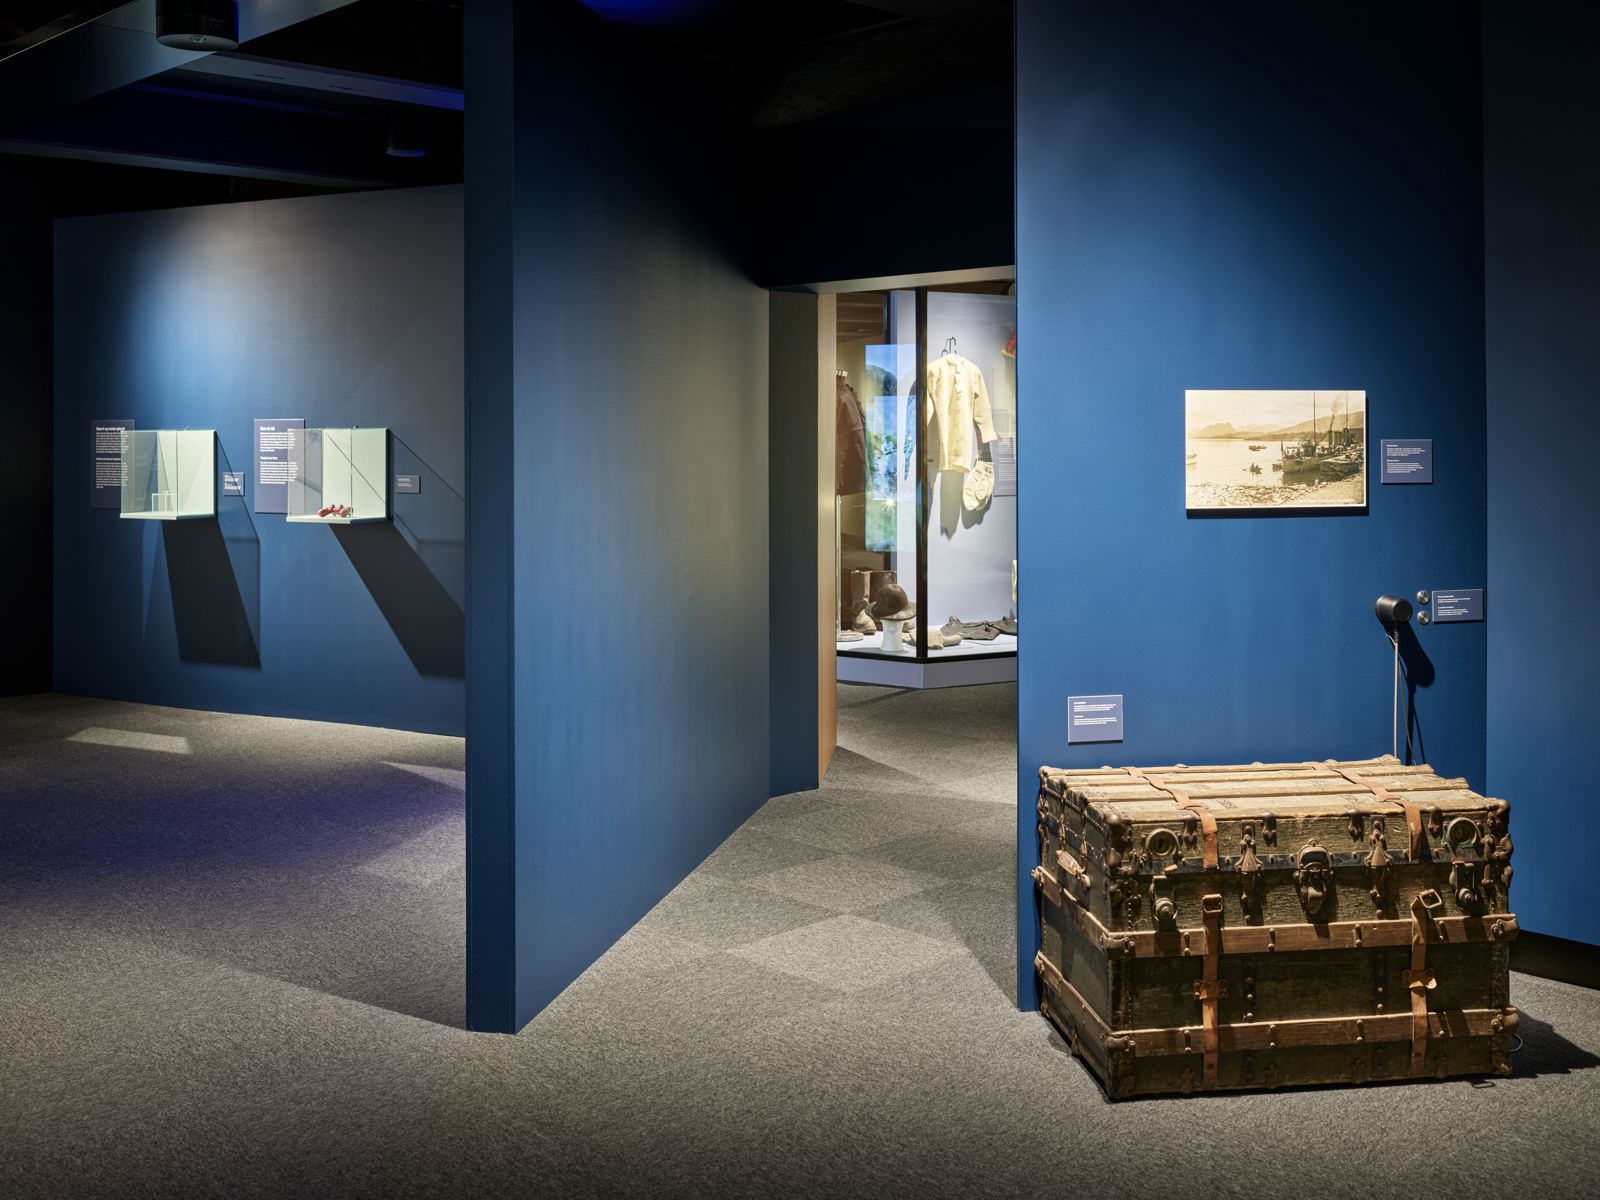 Utstillingsrom med blå vegger i ulike vinkler, en stor kiste og diverse andre ting er stilt ut. Foto.